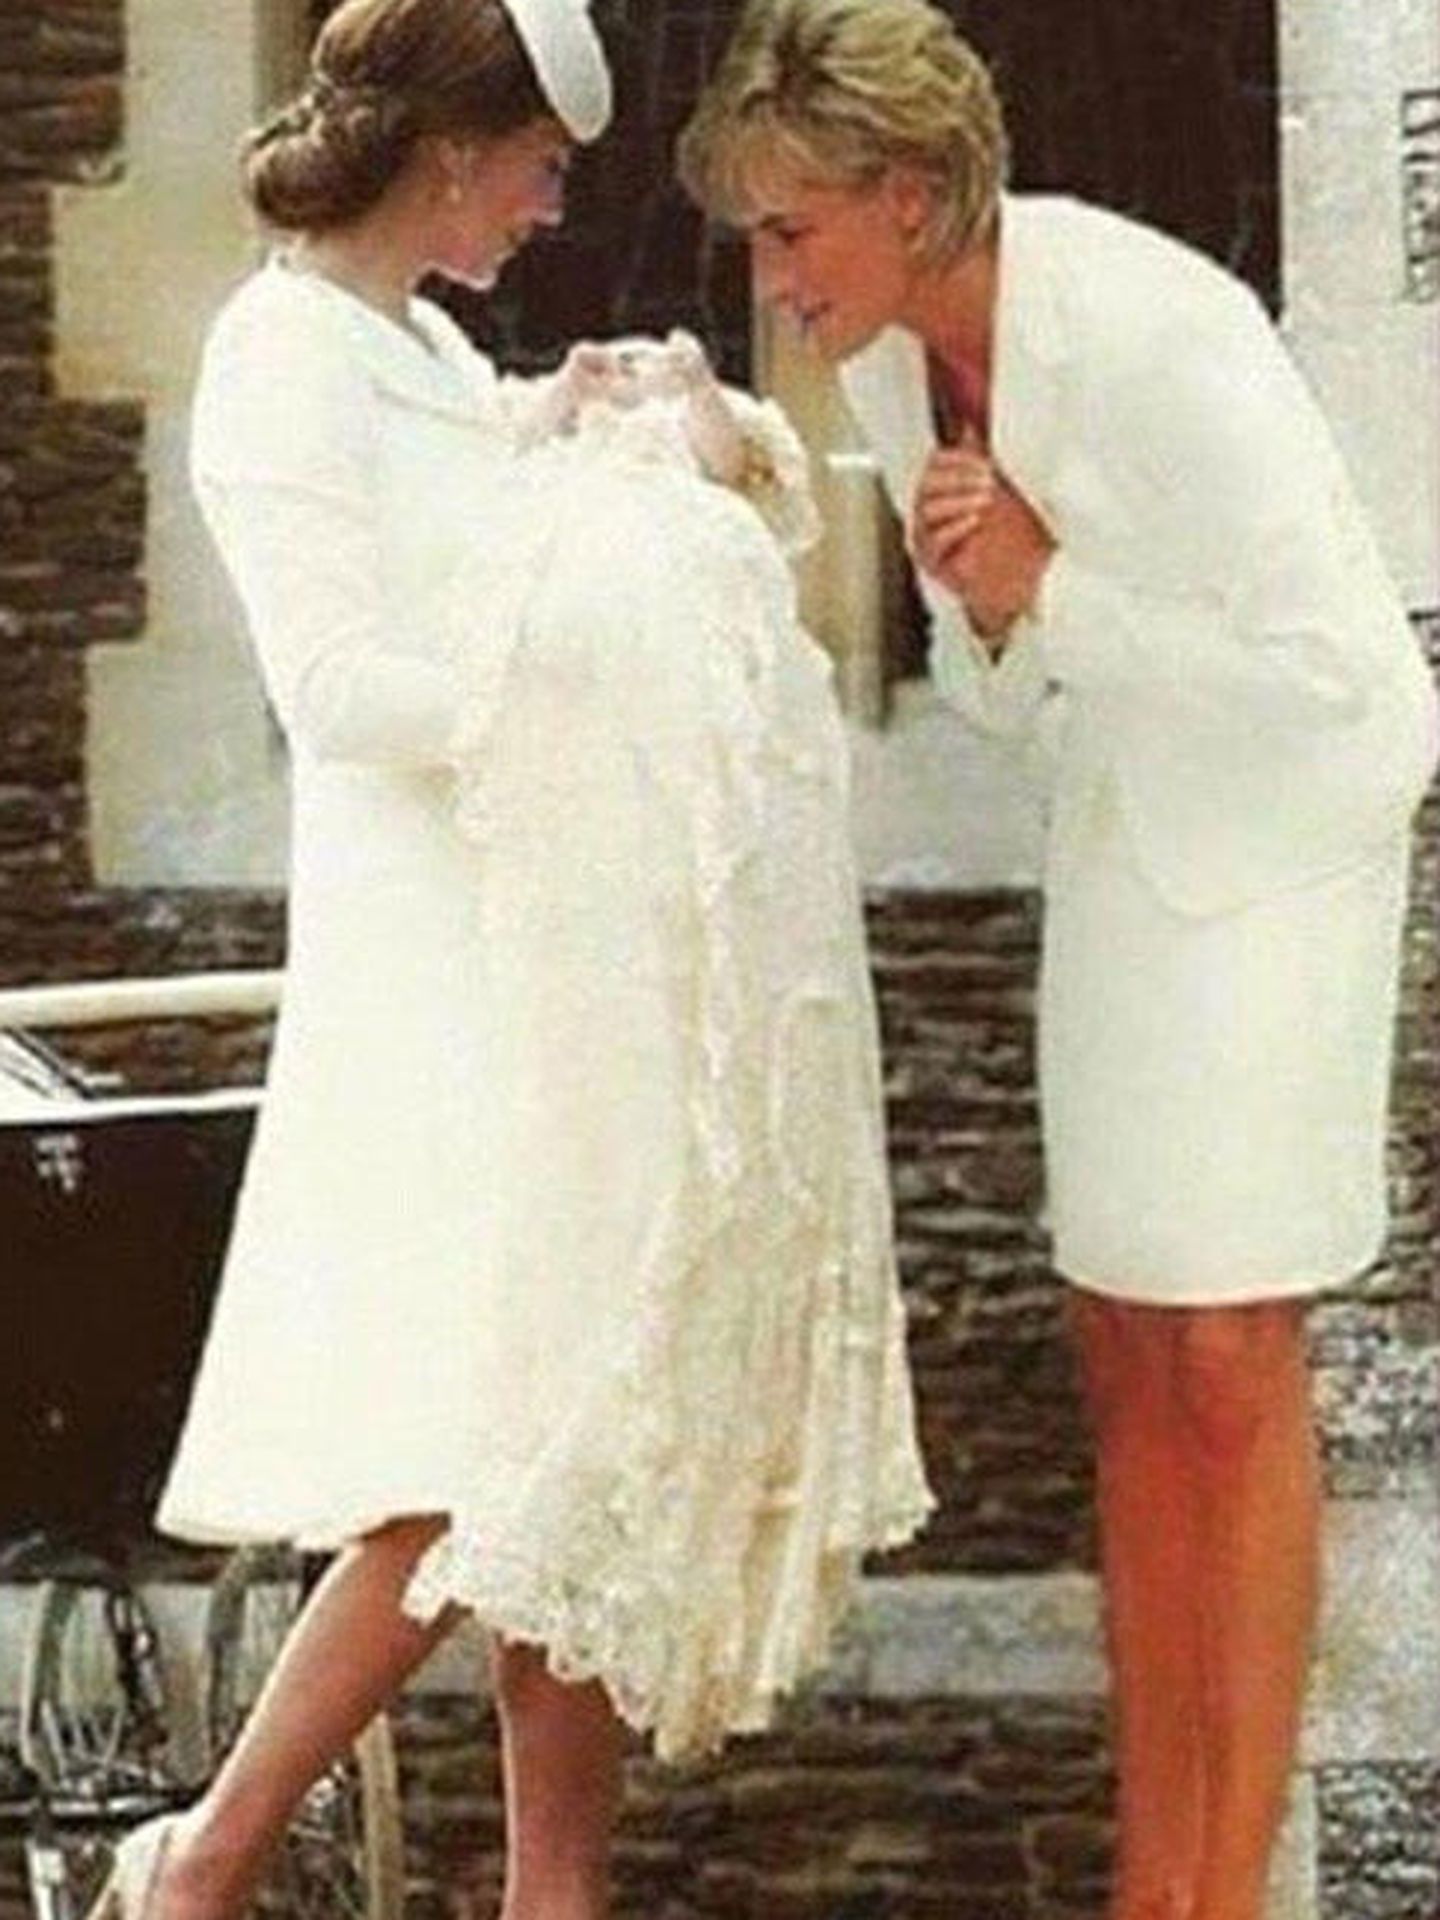 Imagen retocada donde se ve a Diana de Gales interactuando con su segunda nieta (Facebook)